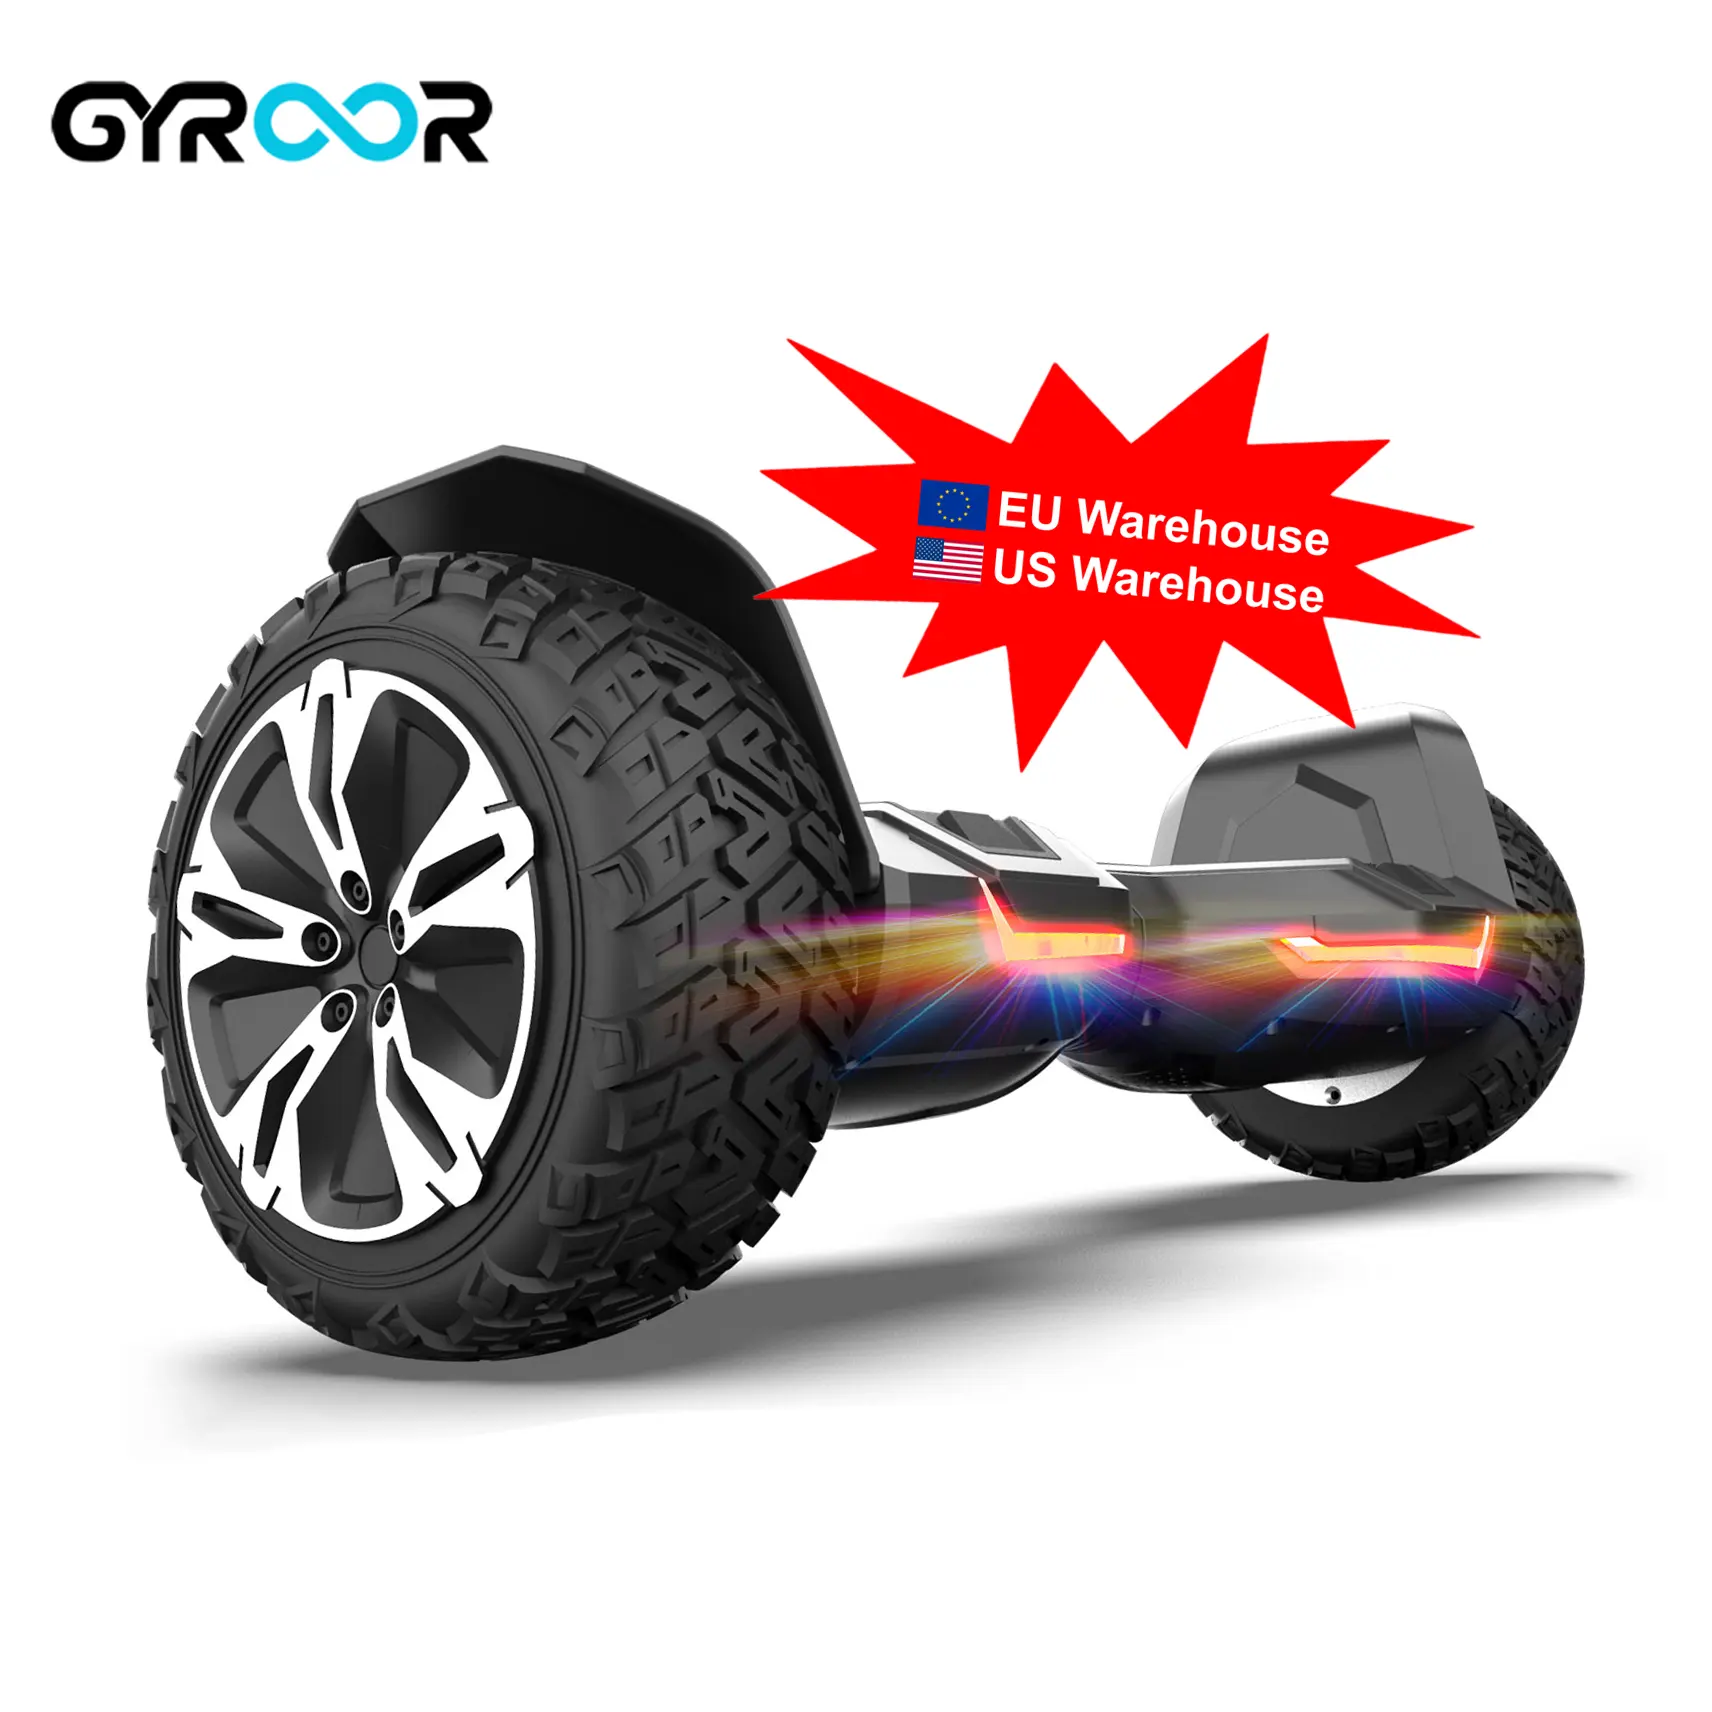 Gyroor 8.5 Inch Off Road Điện Thông Minh Tự Cân Bằng Scooter Hoverboard Với Blue Tooth Loa 2 Bánh Hoverboard Thời Trang